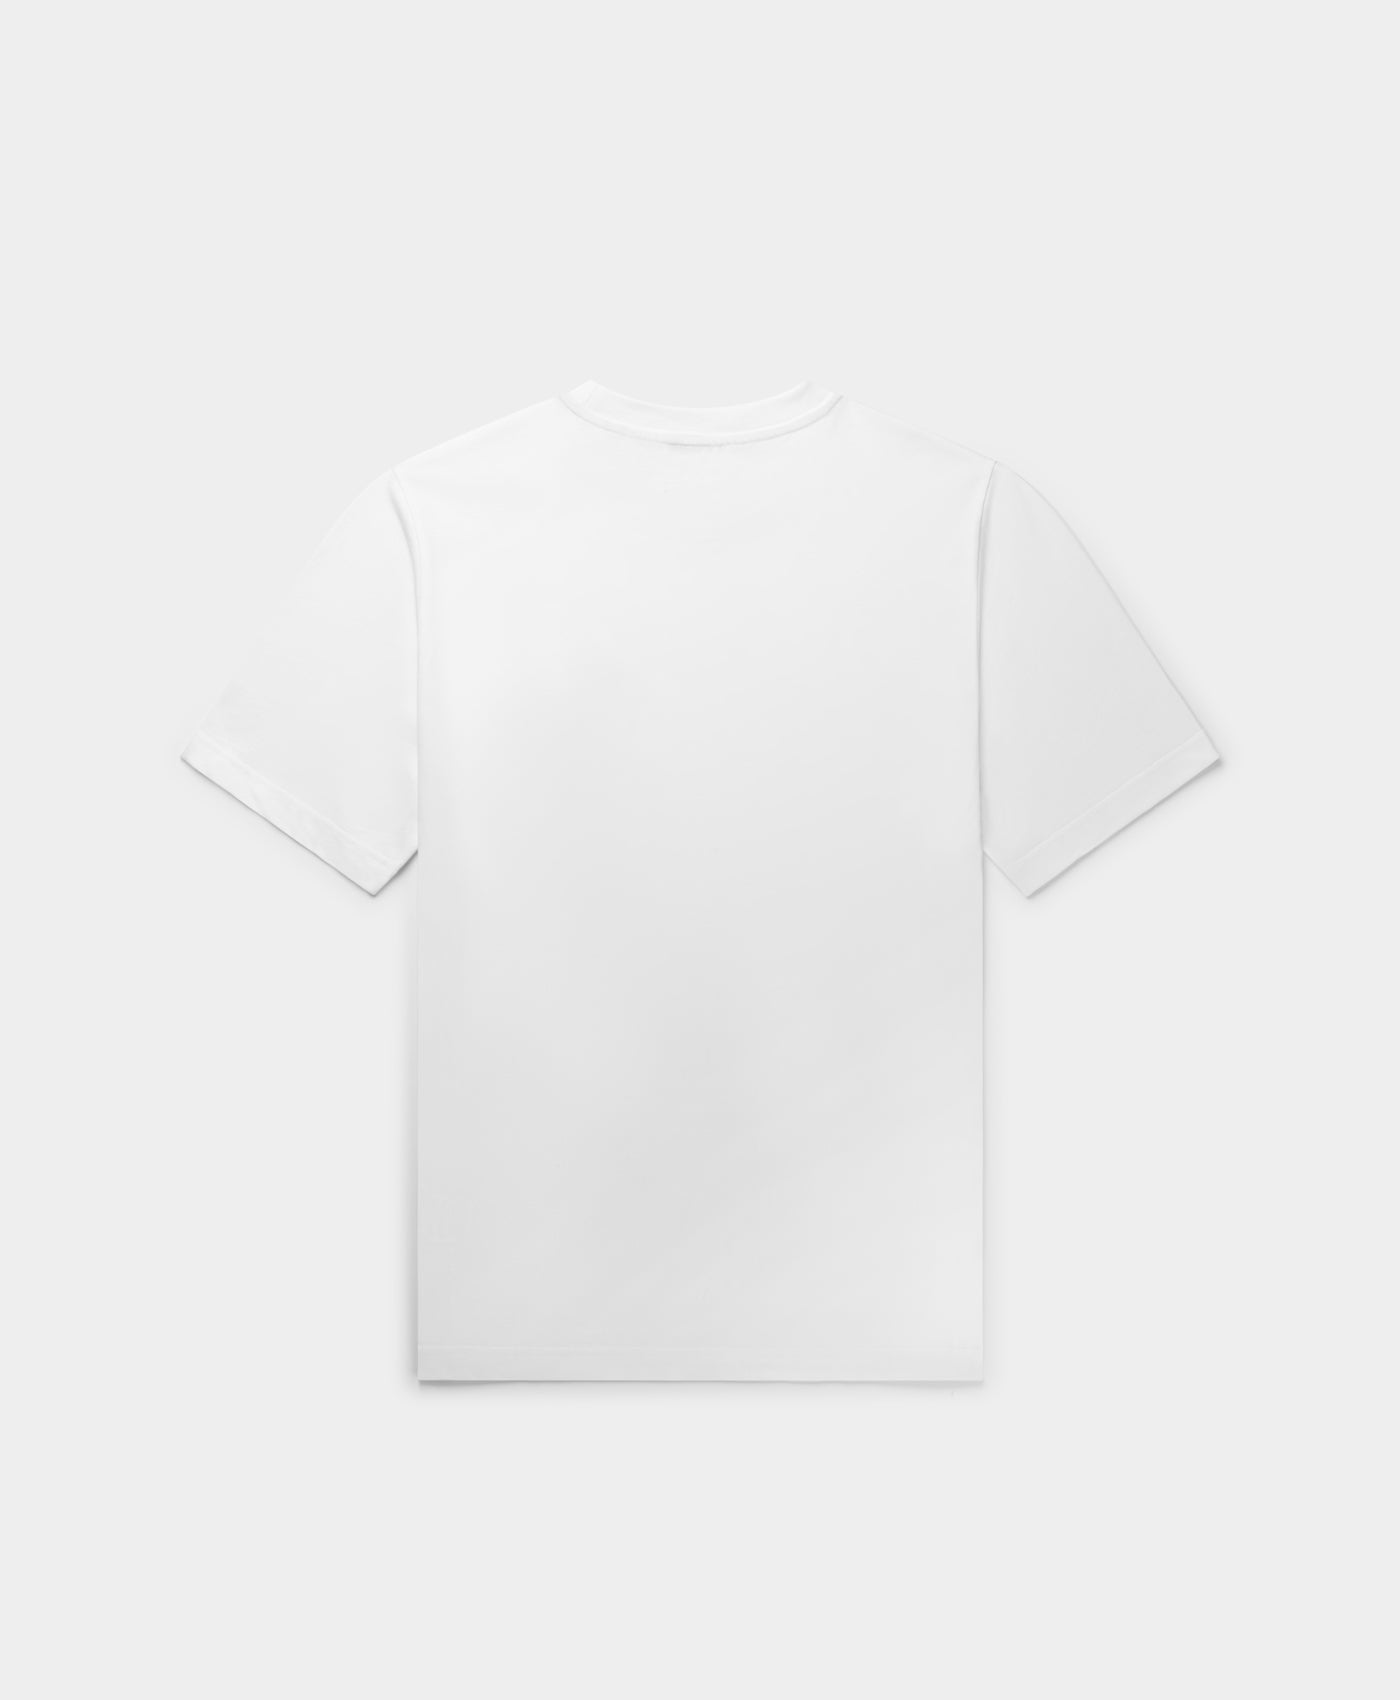 DP - White Glow T-Shirt - Packshot - Rear